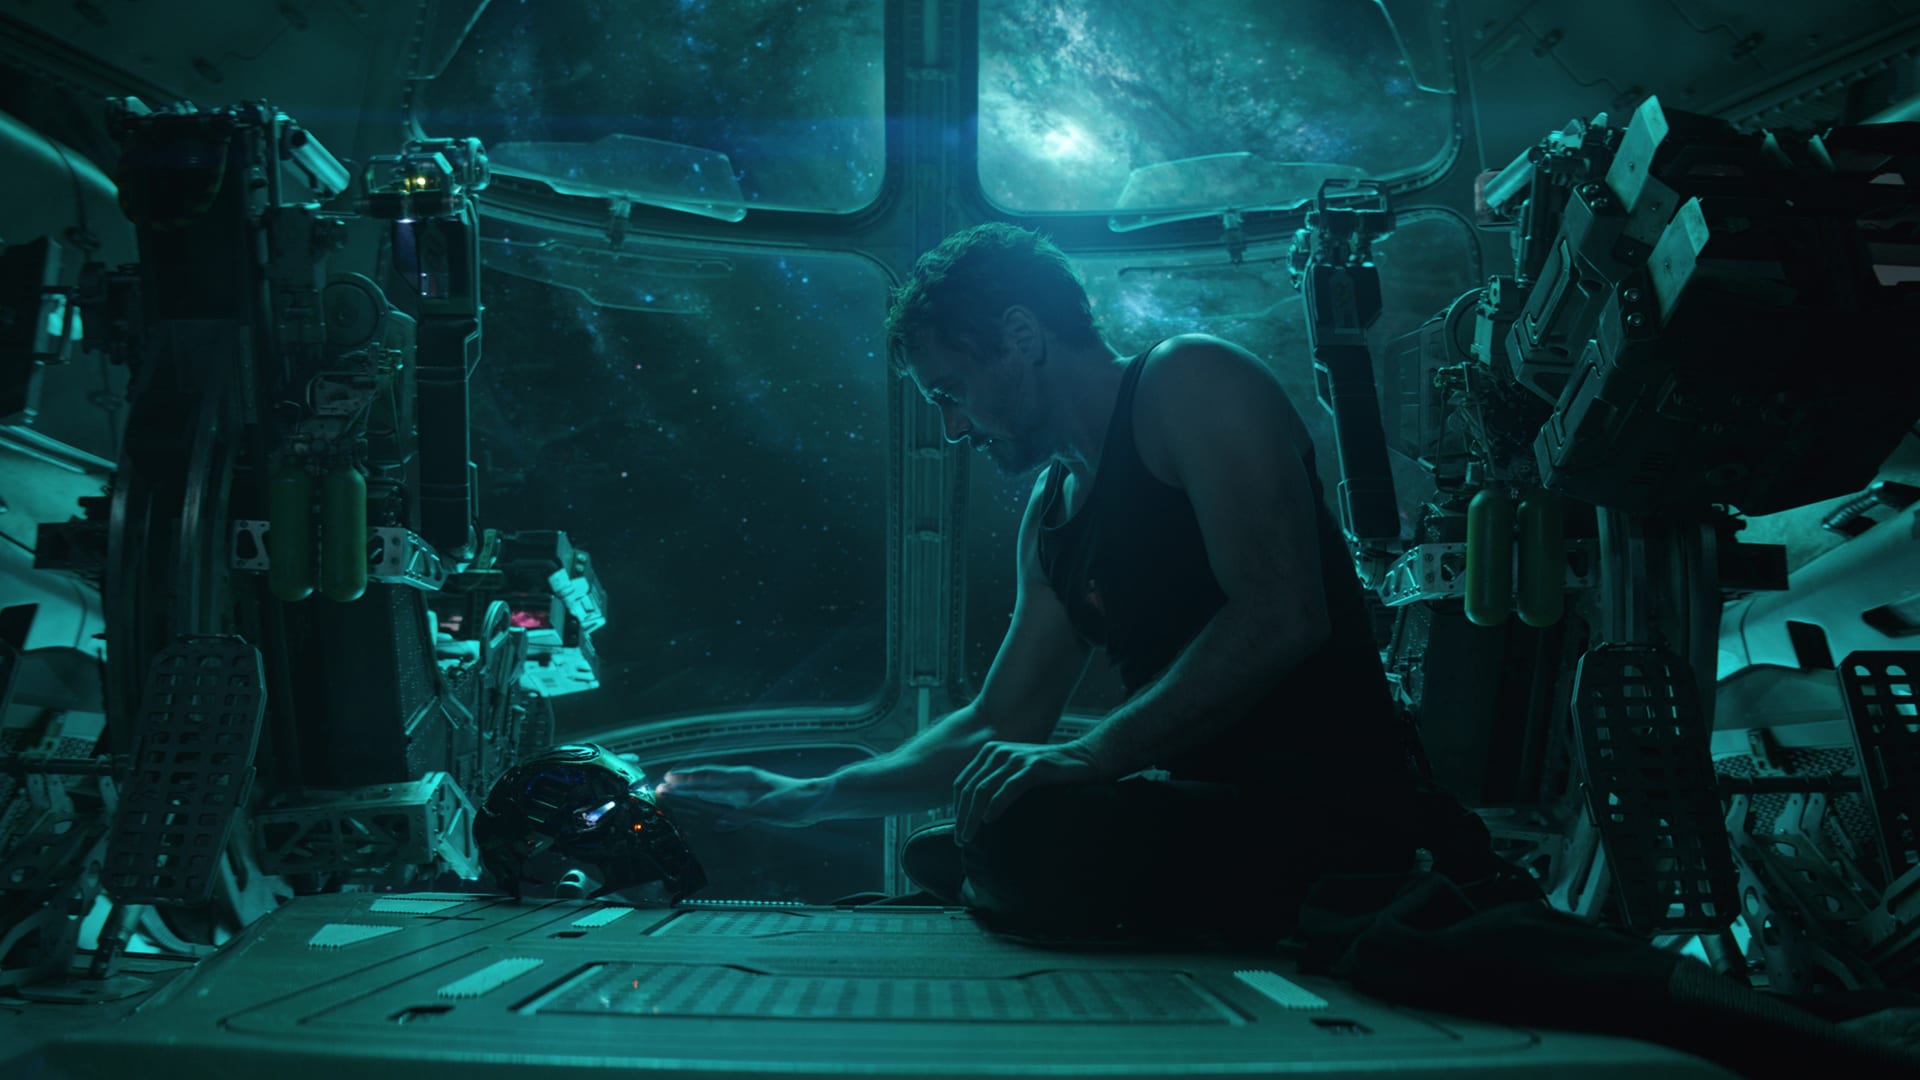 Will Avengers: Endgame dethrone Avatar as the highest-grossing film of all time?